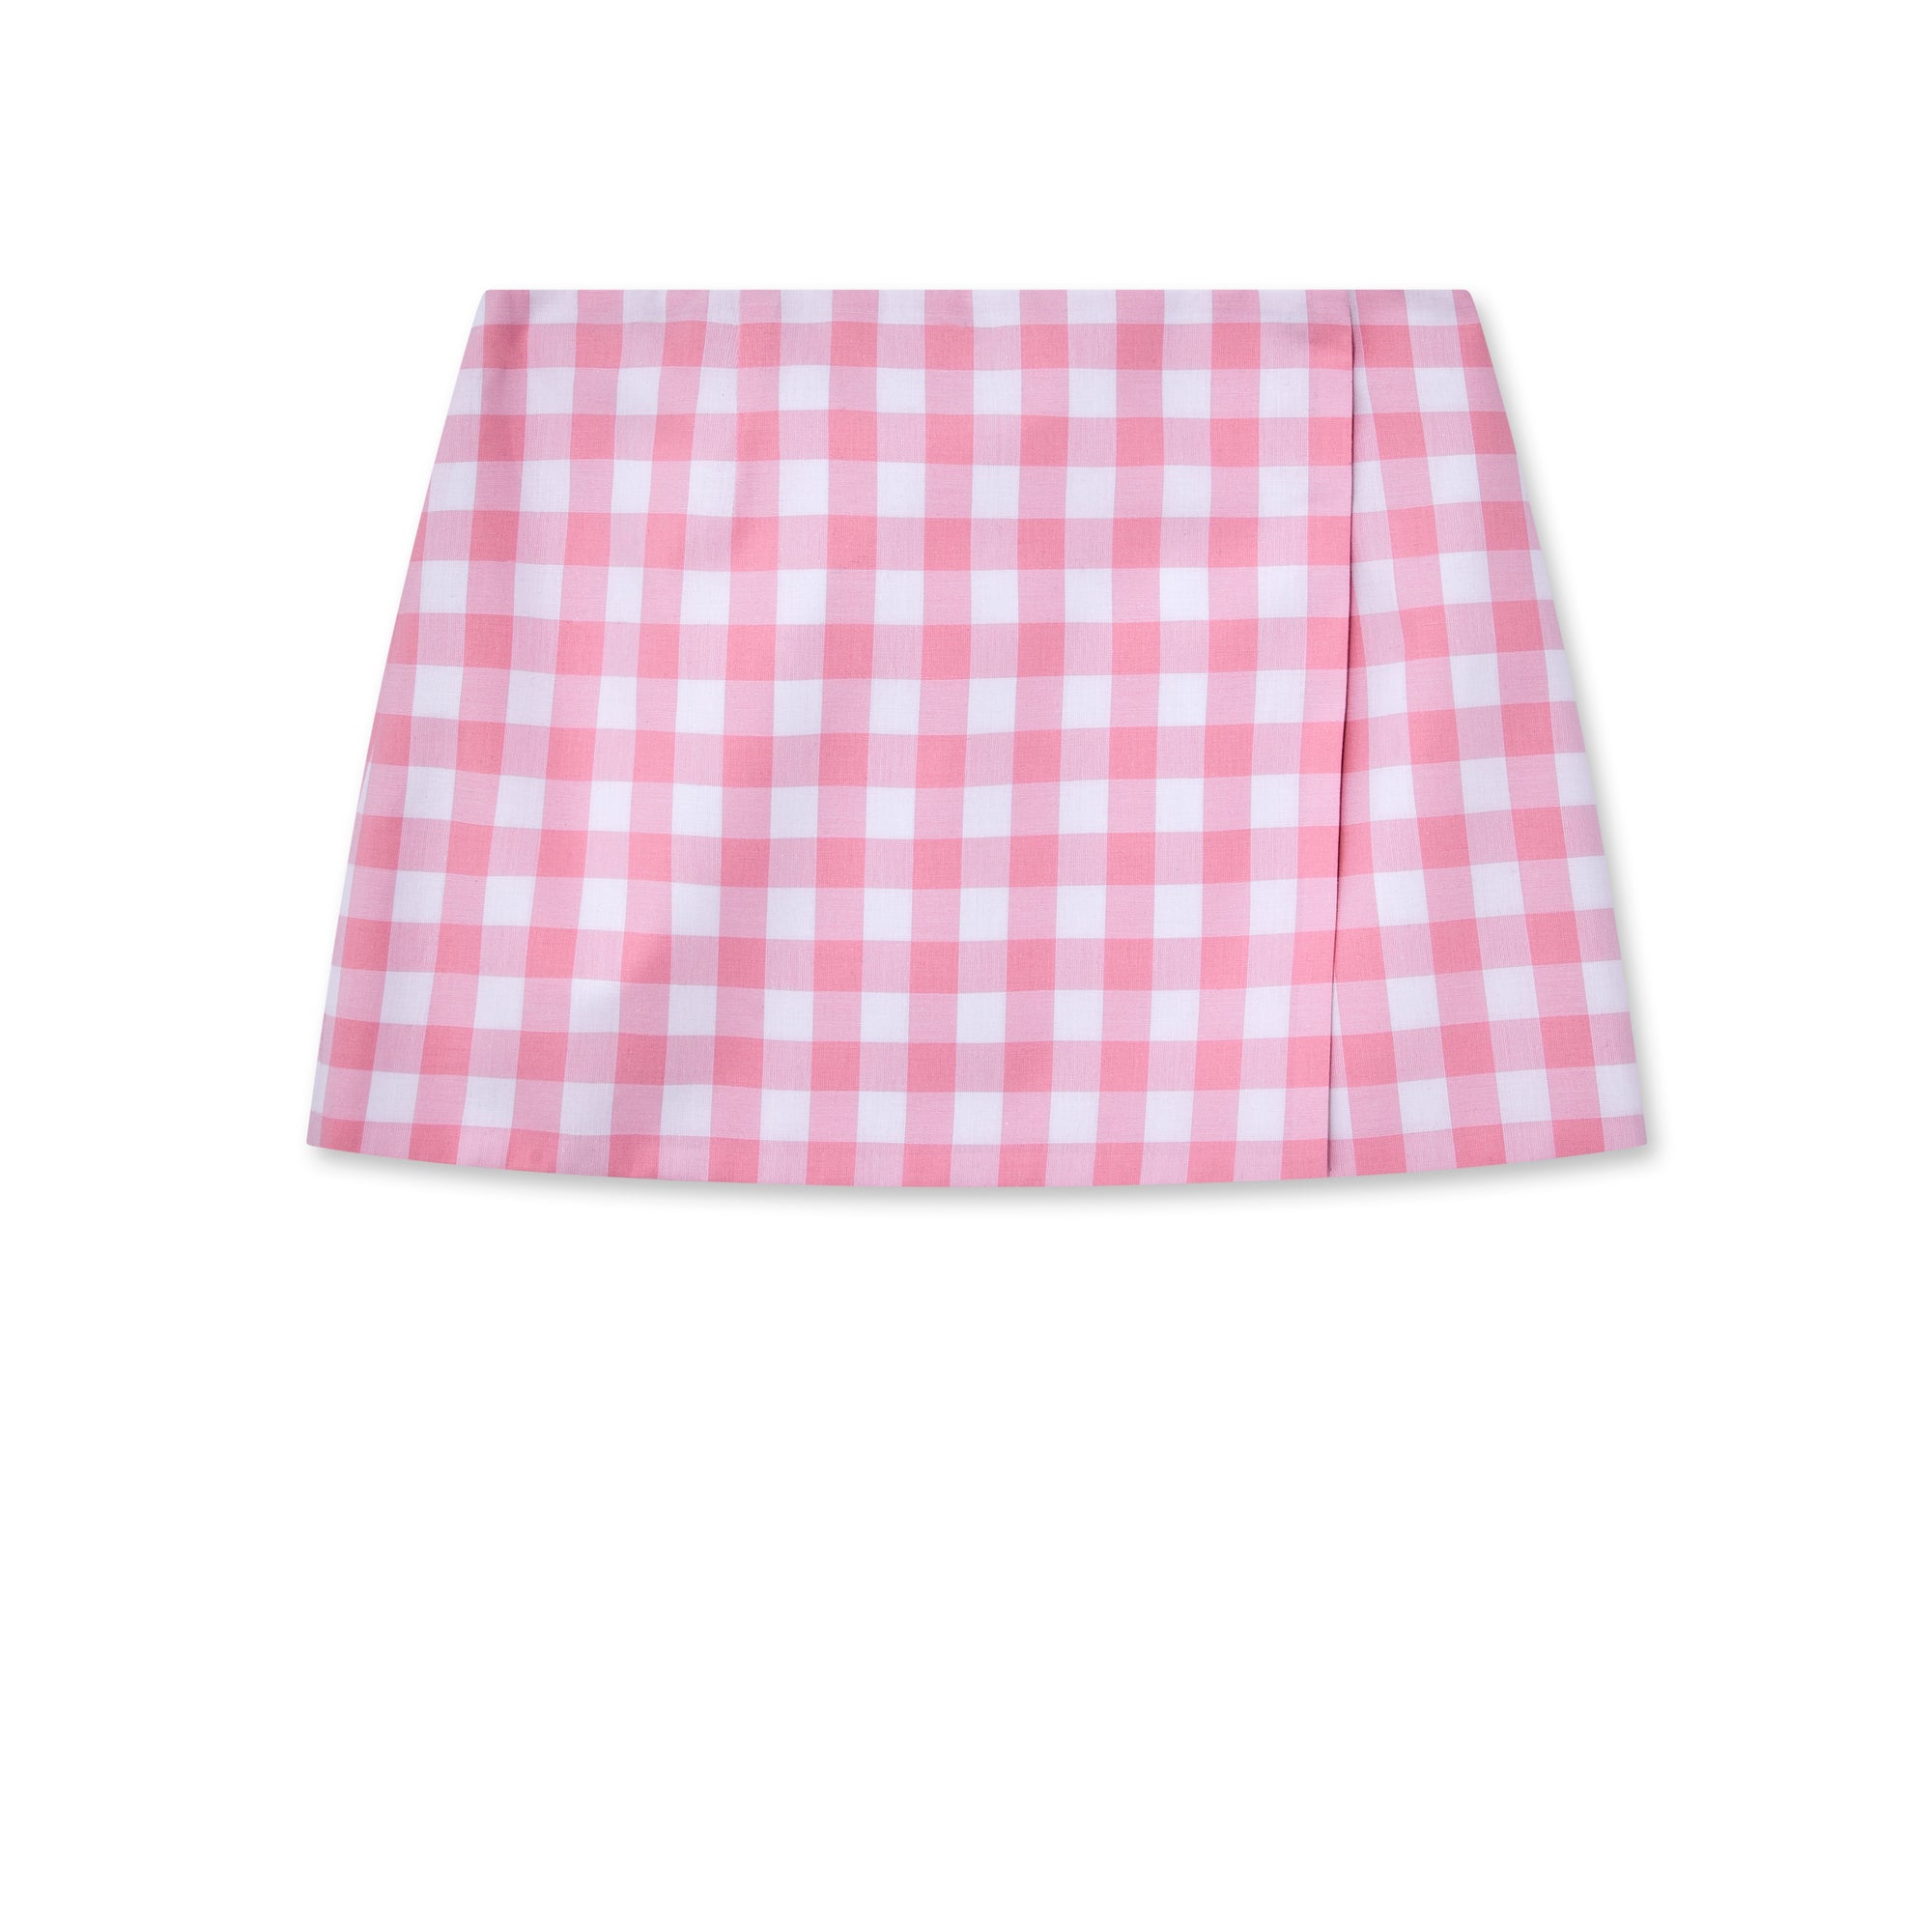 Prada - Women’s Gingham Miniskirt - (Pink) view 5